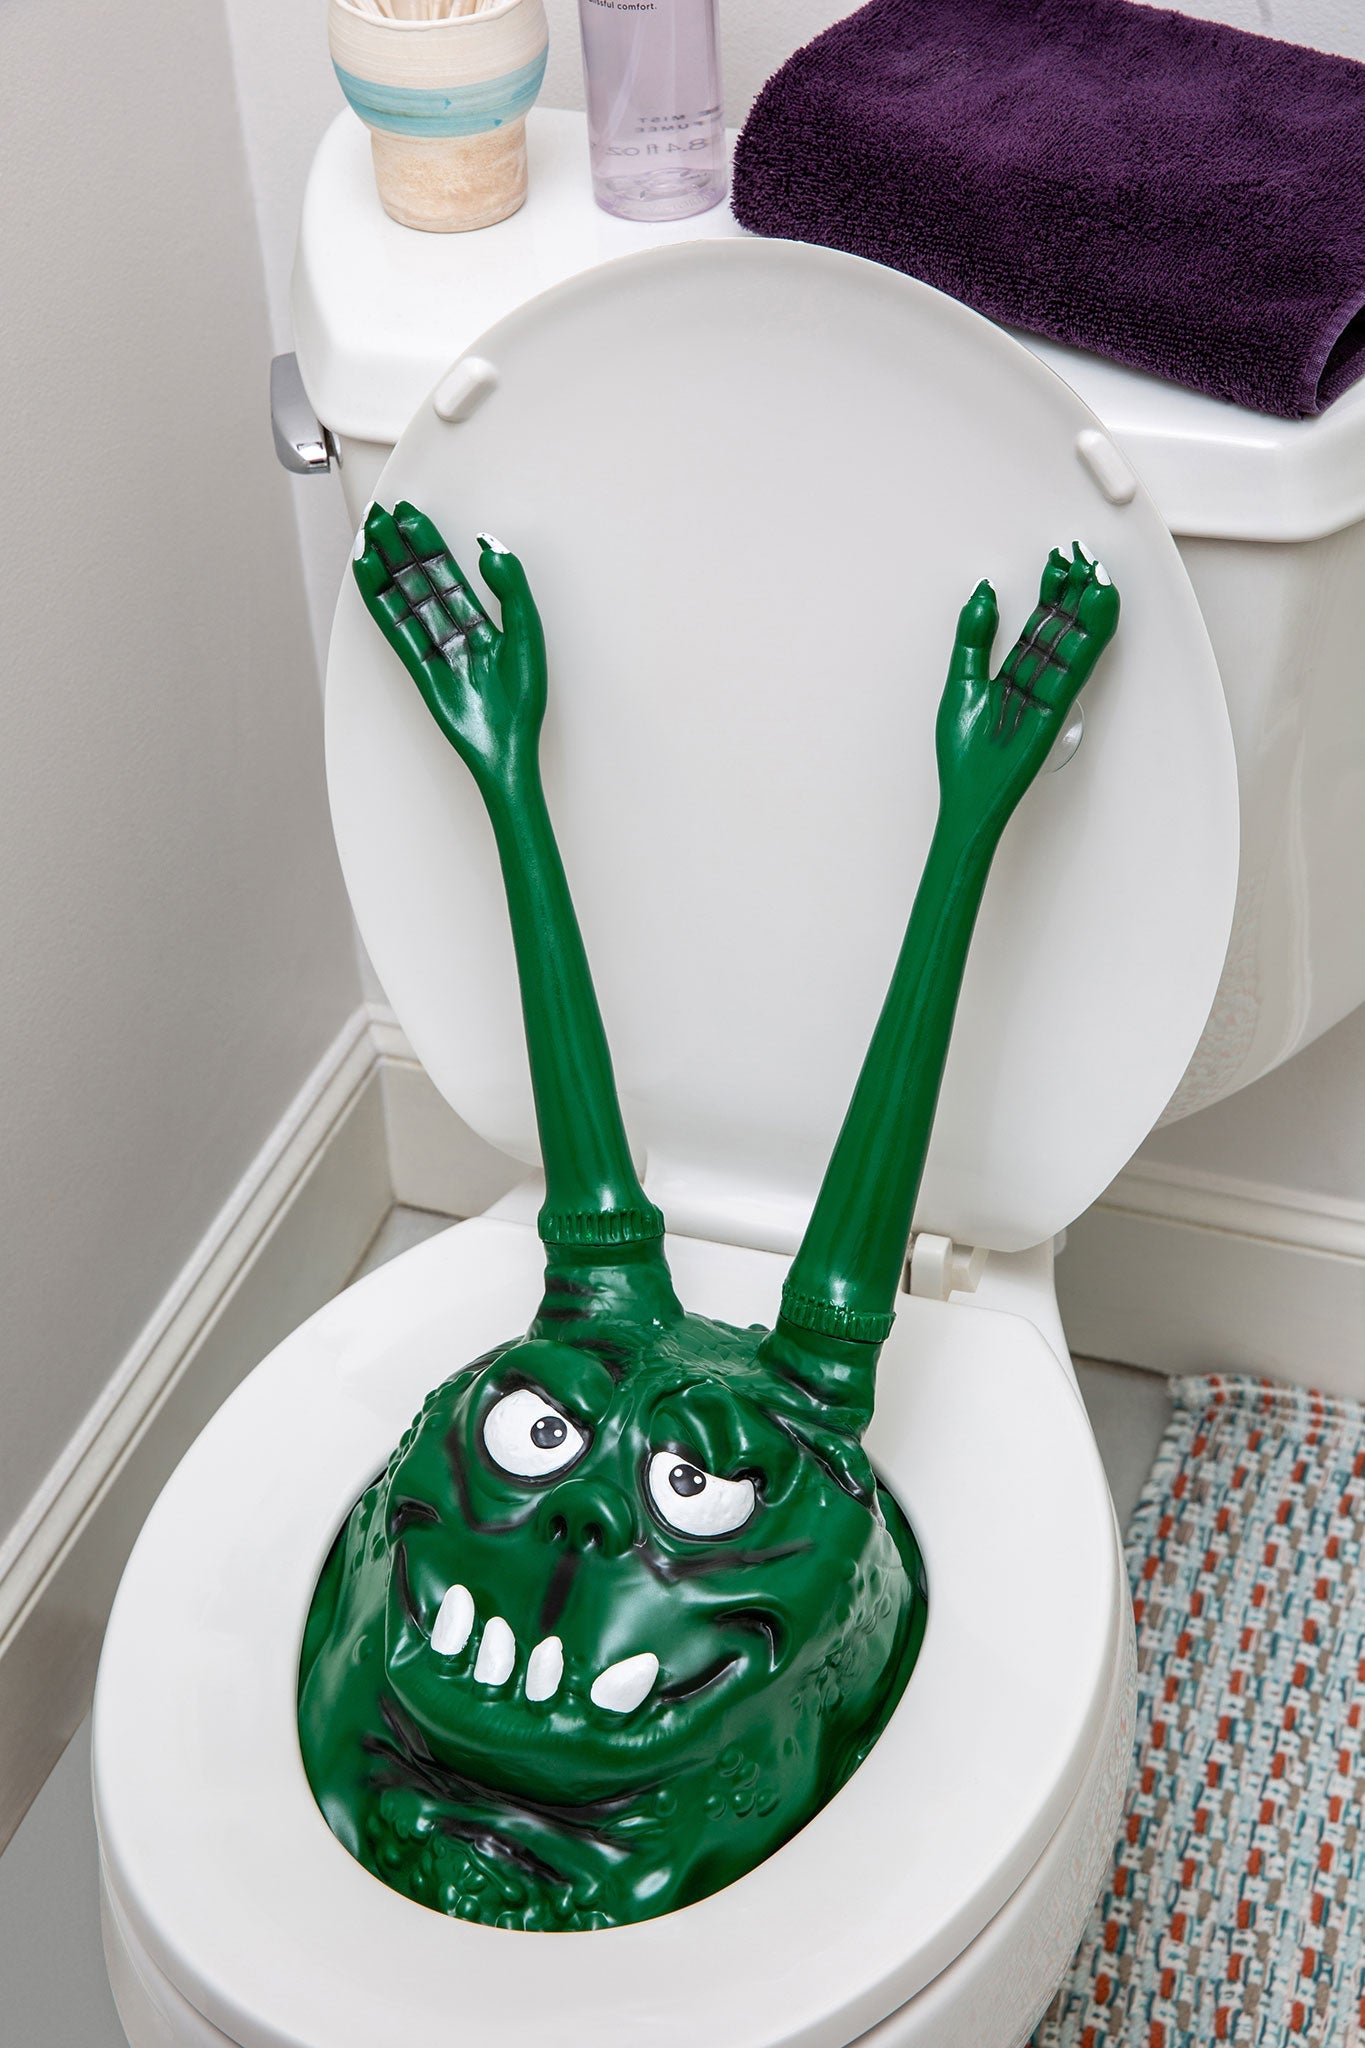 Toilet Monster